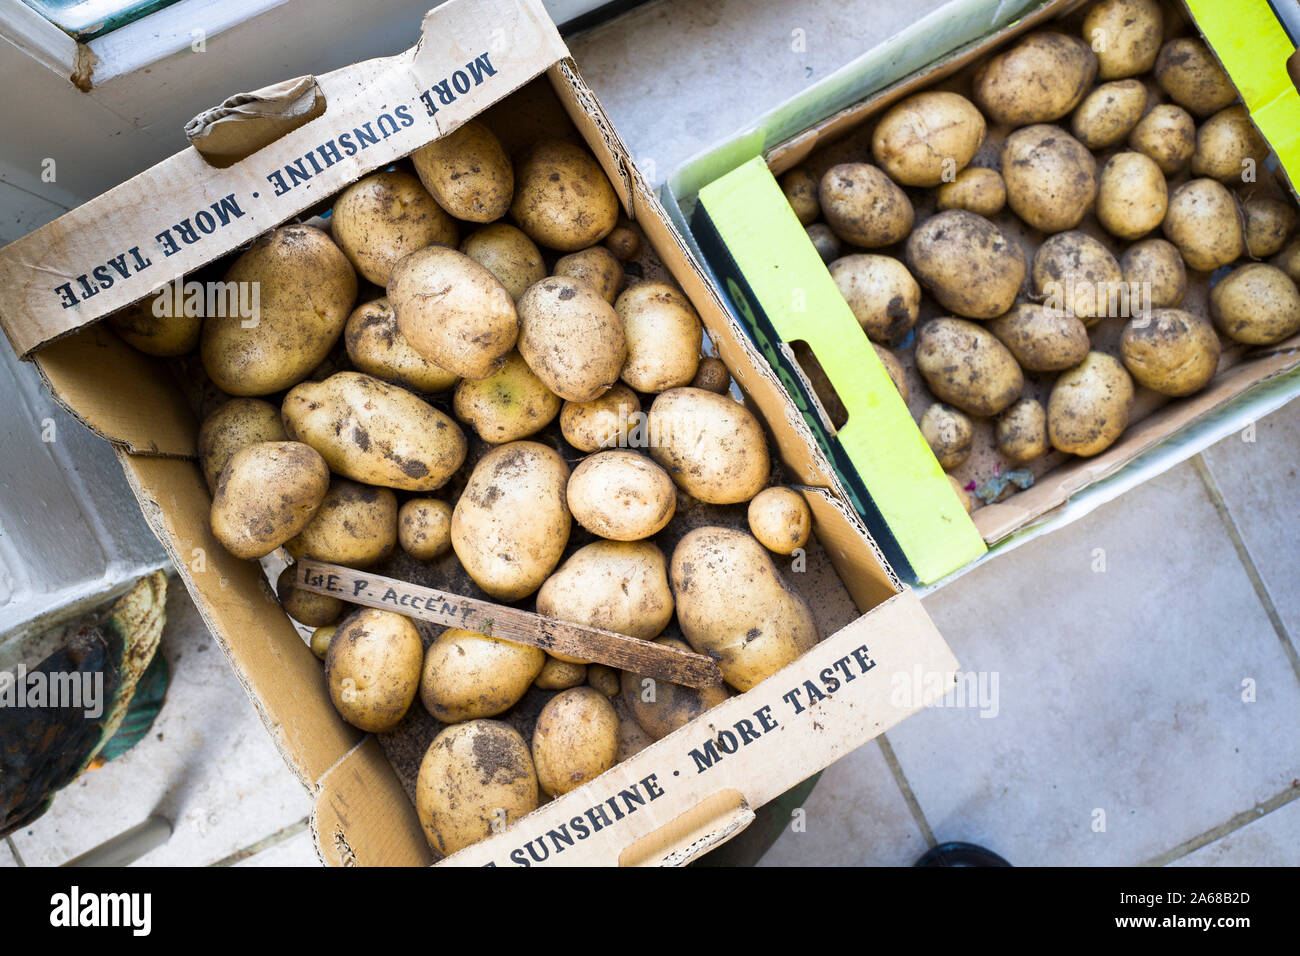 Appena scavato prima le patate primaticce accento in scatole pronte per mangiare nel Regno Unito Foto Stock